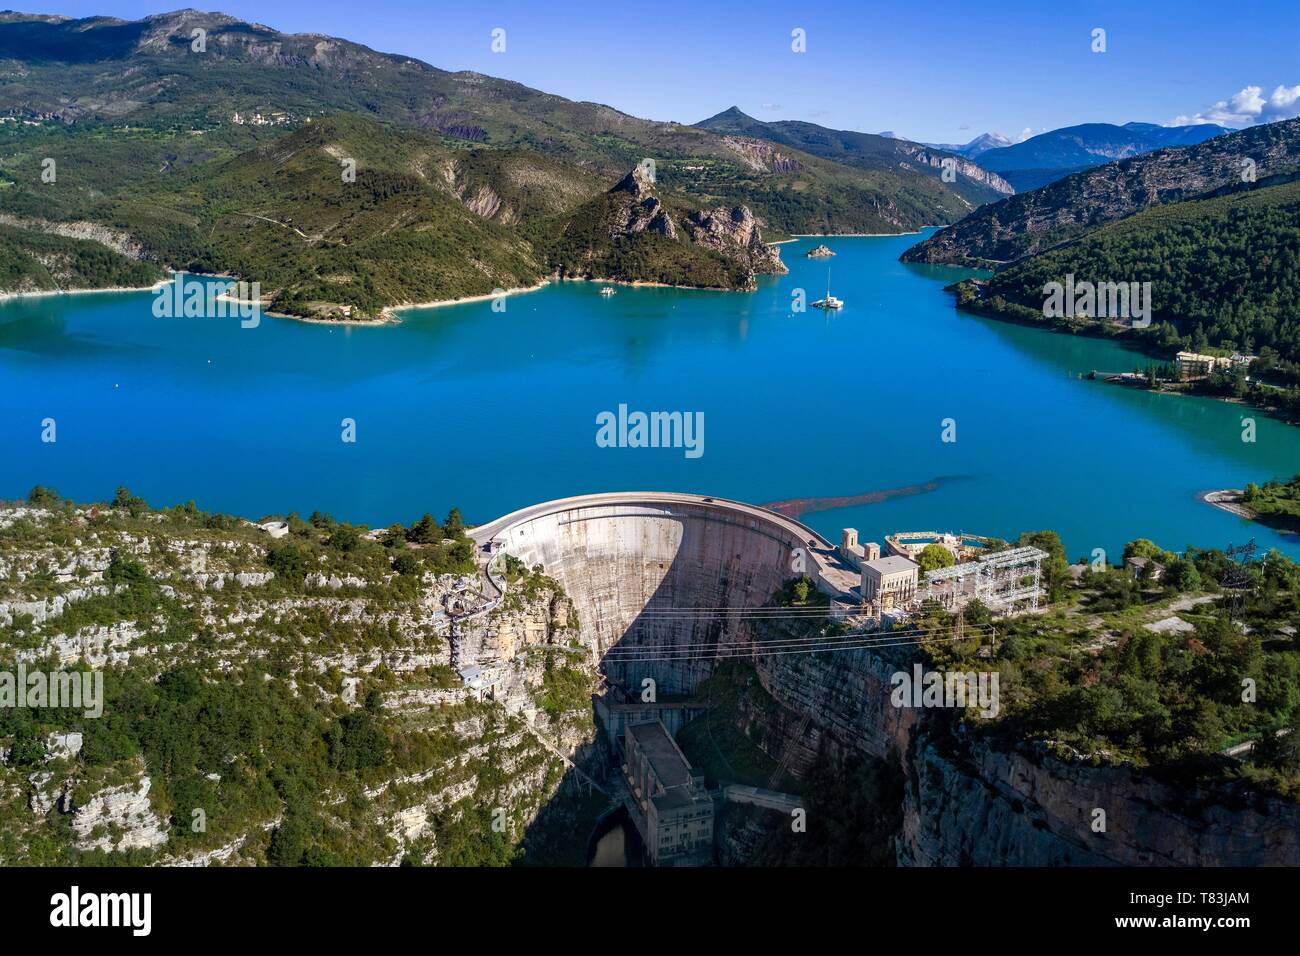 Francia, Alpes de Haute Provence, il lago di Castillon diga che trattiene le acque del fiume Verdon, una gigantesca meridiana su 100 metri di altezza parete (vista aerea) Foto Stock